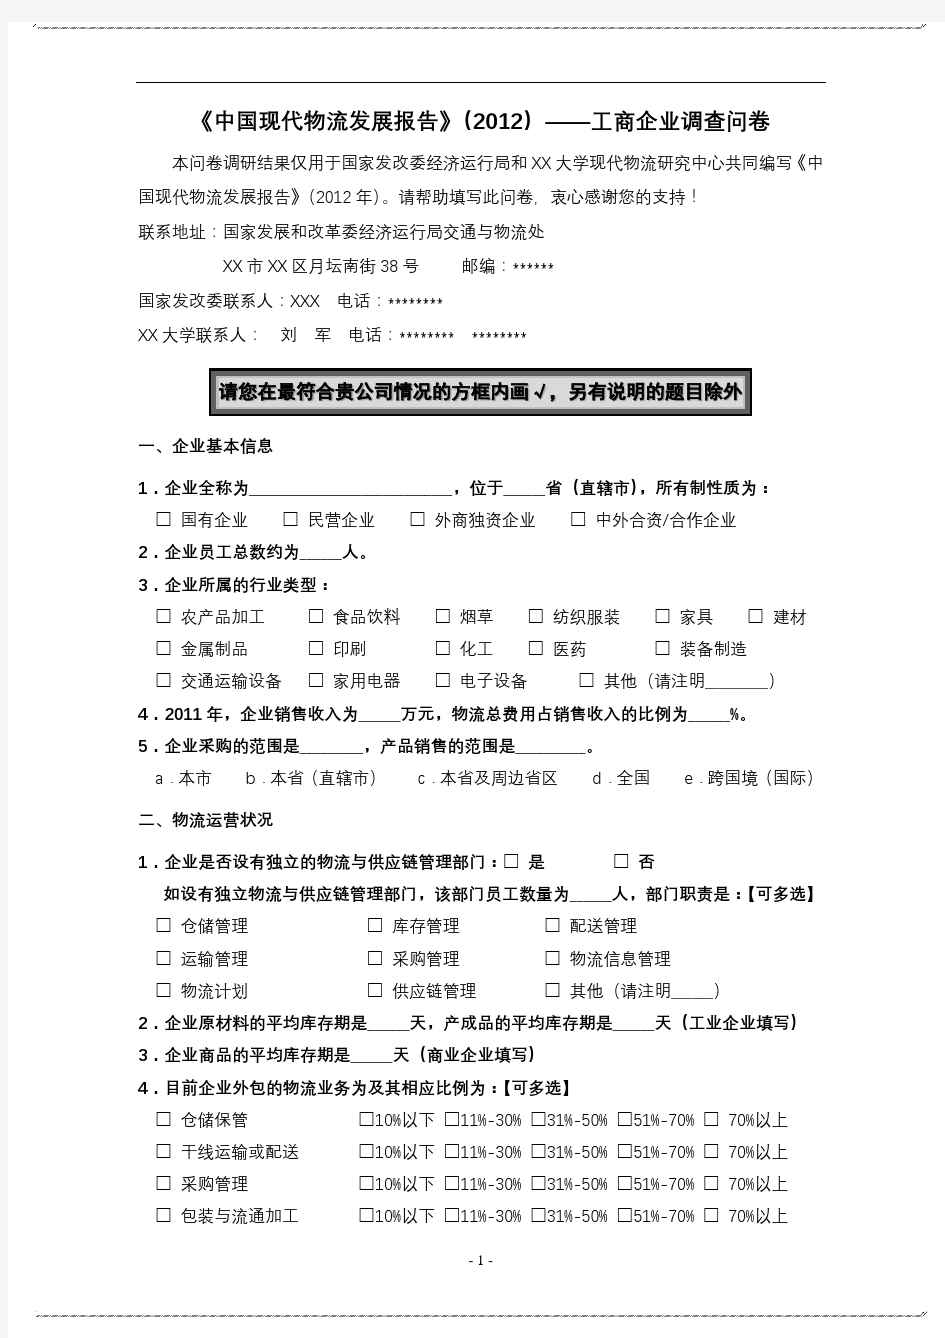 《中国现代物流发展报告》(2012)——工商企业调查问卷【模板】